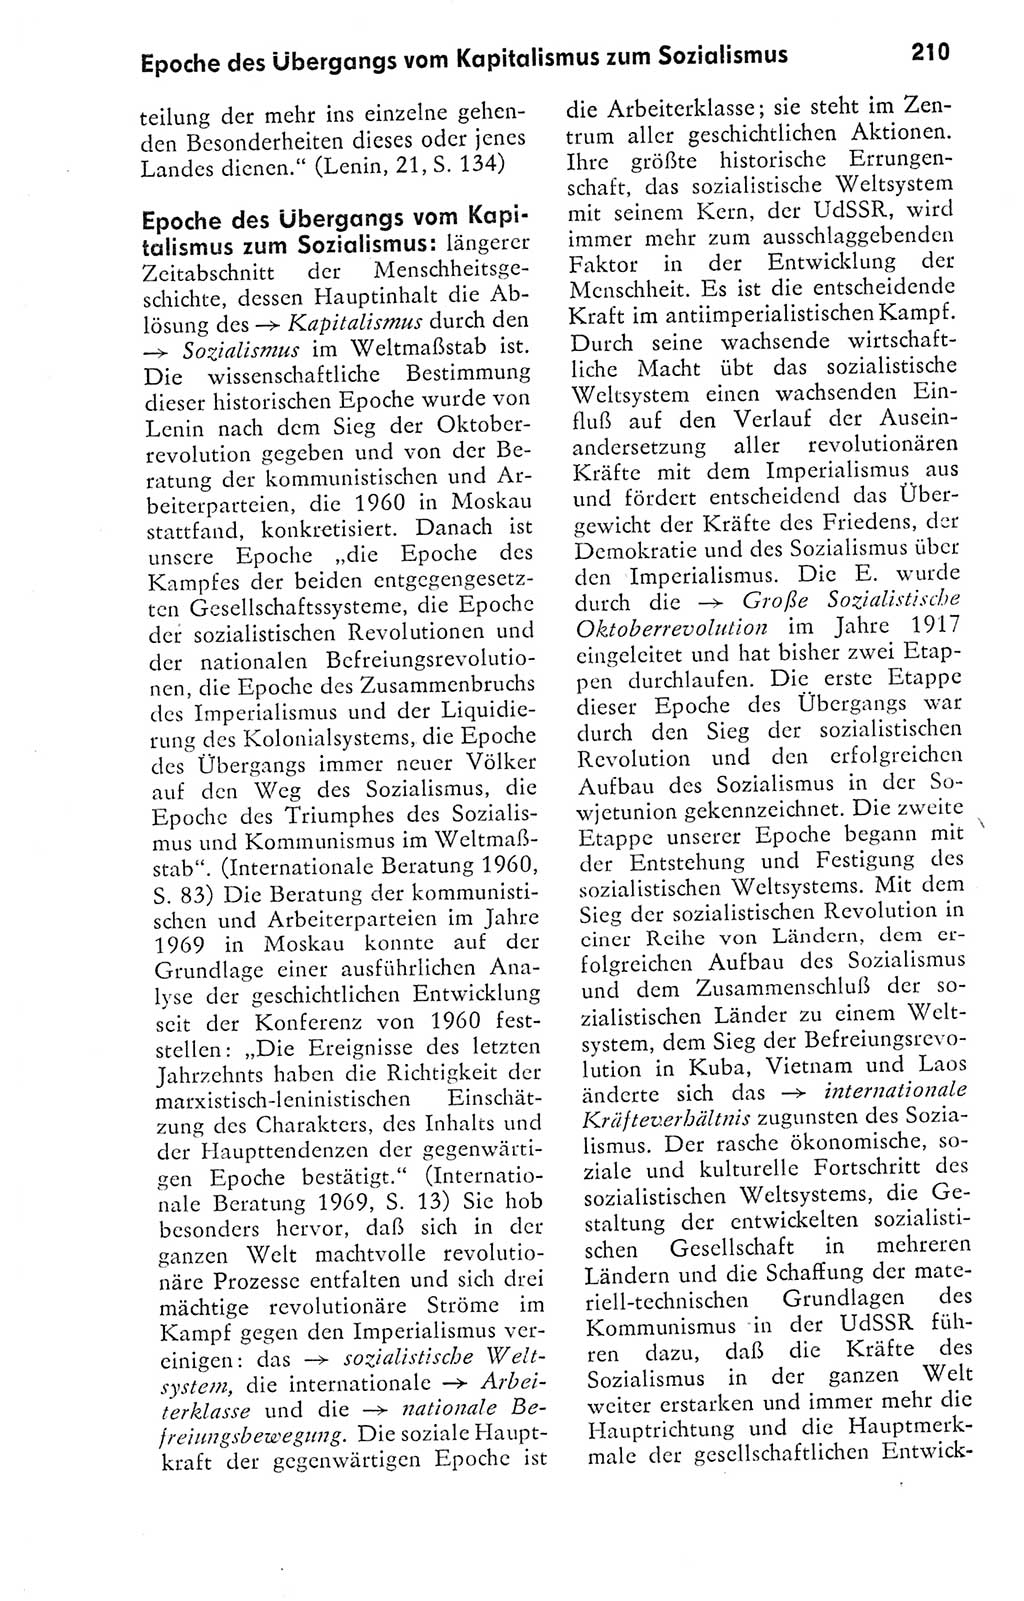 Kleines politisches Wörterbuch [Deutsche Demokratische Republik (DDR)] 1978, Seite 210 (Kl. pol. Wb. DDR 1978, S. 210)